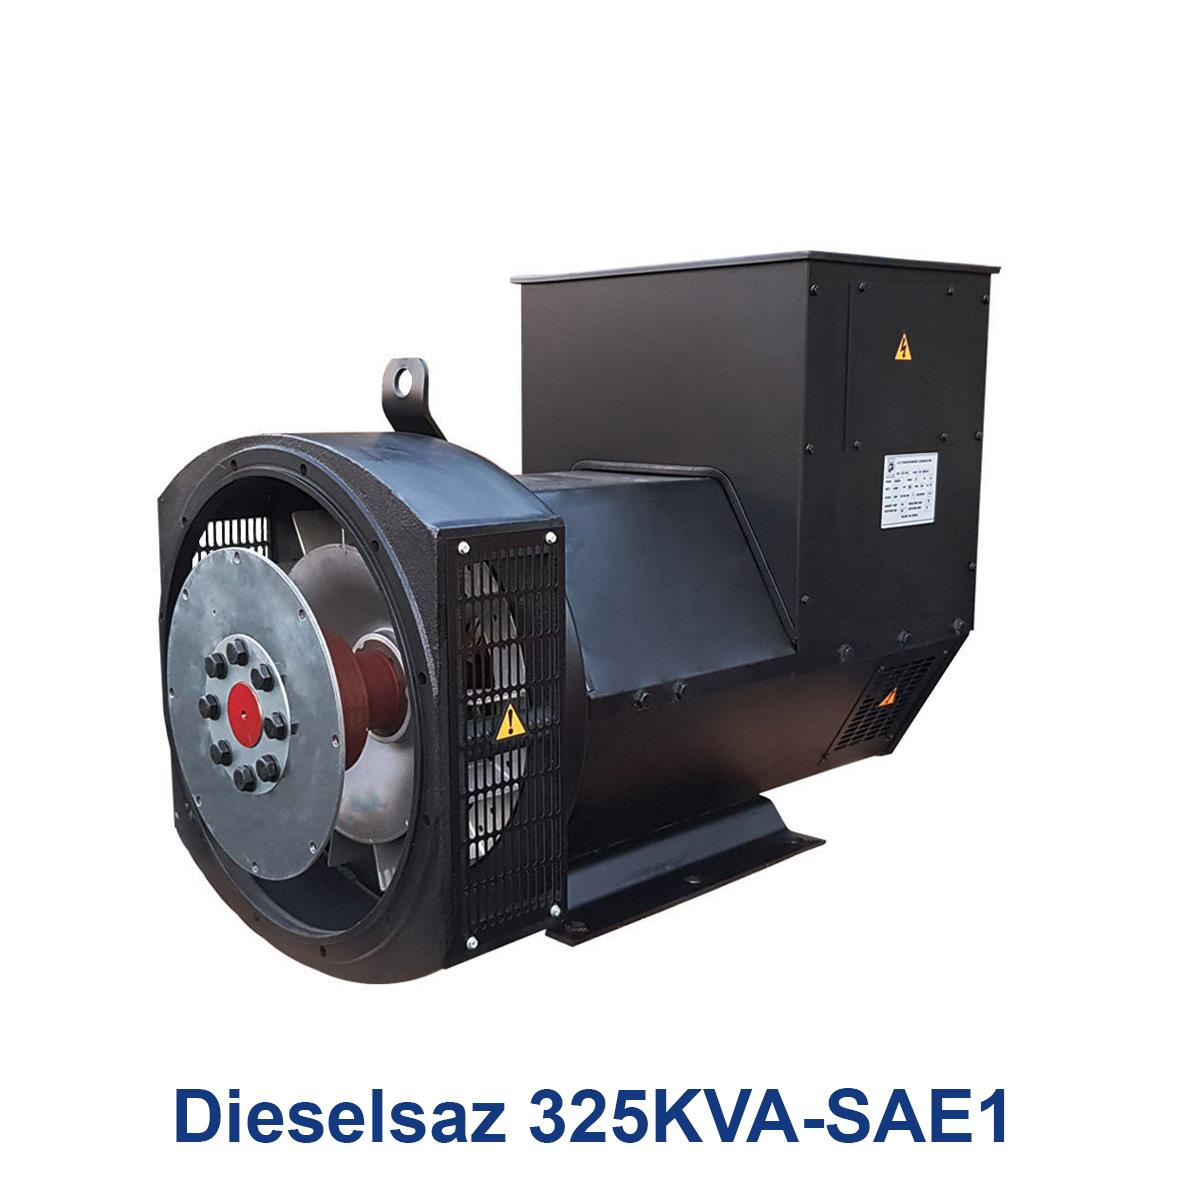 Dieselsaz-325KVA-SAE1